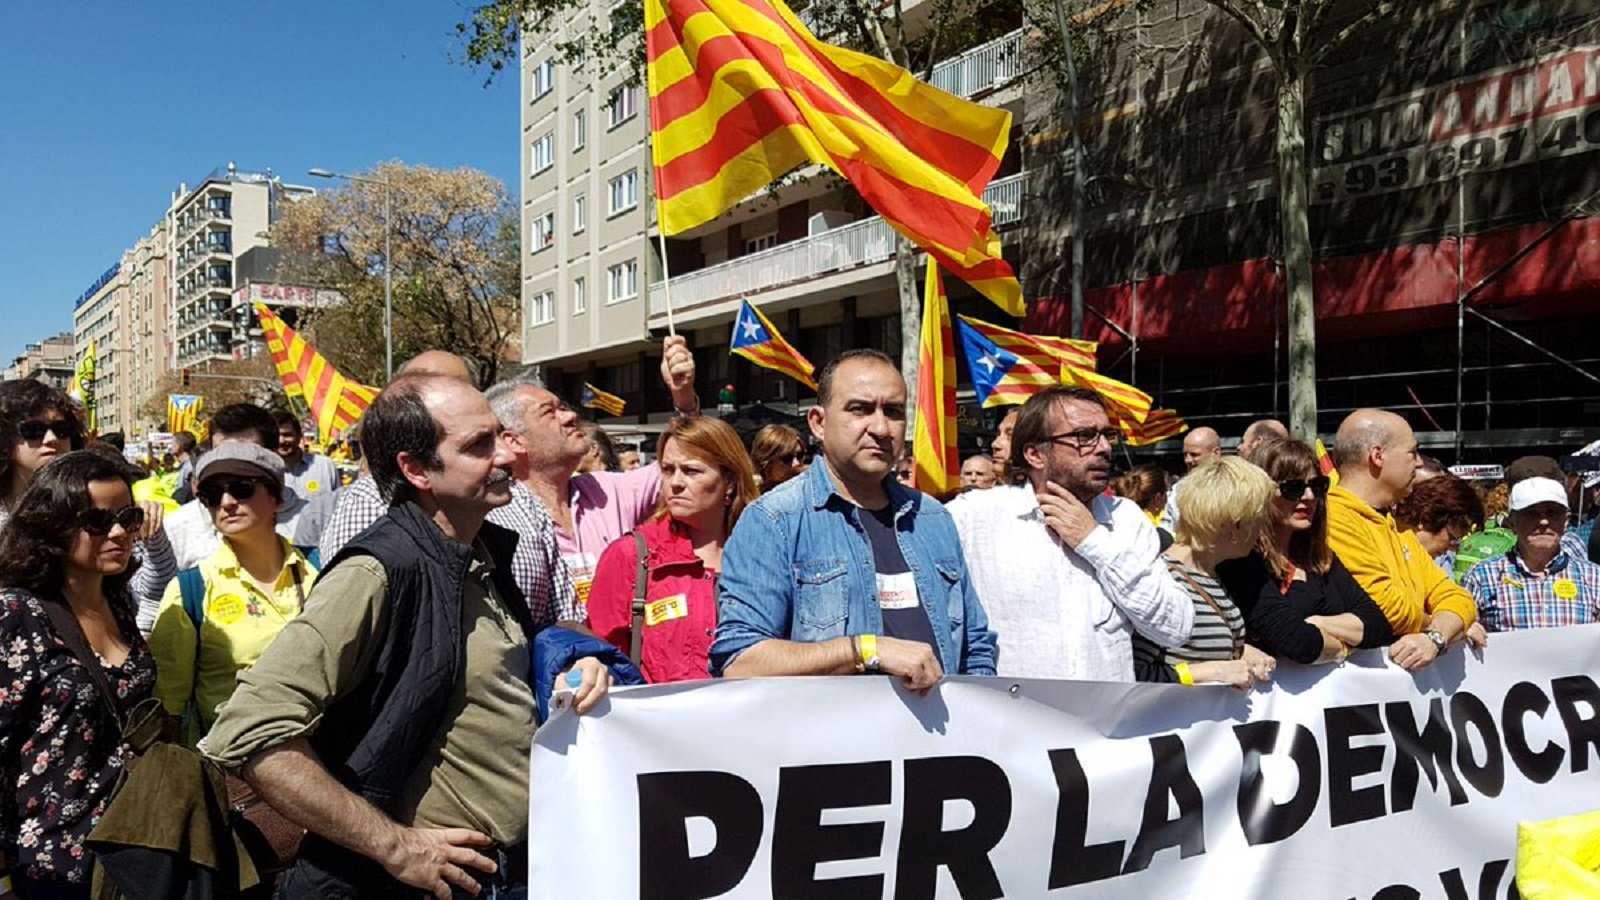 Los diarios de Madrid exigen la dimisión de Pacheco y Ros por su "traición" a España